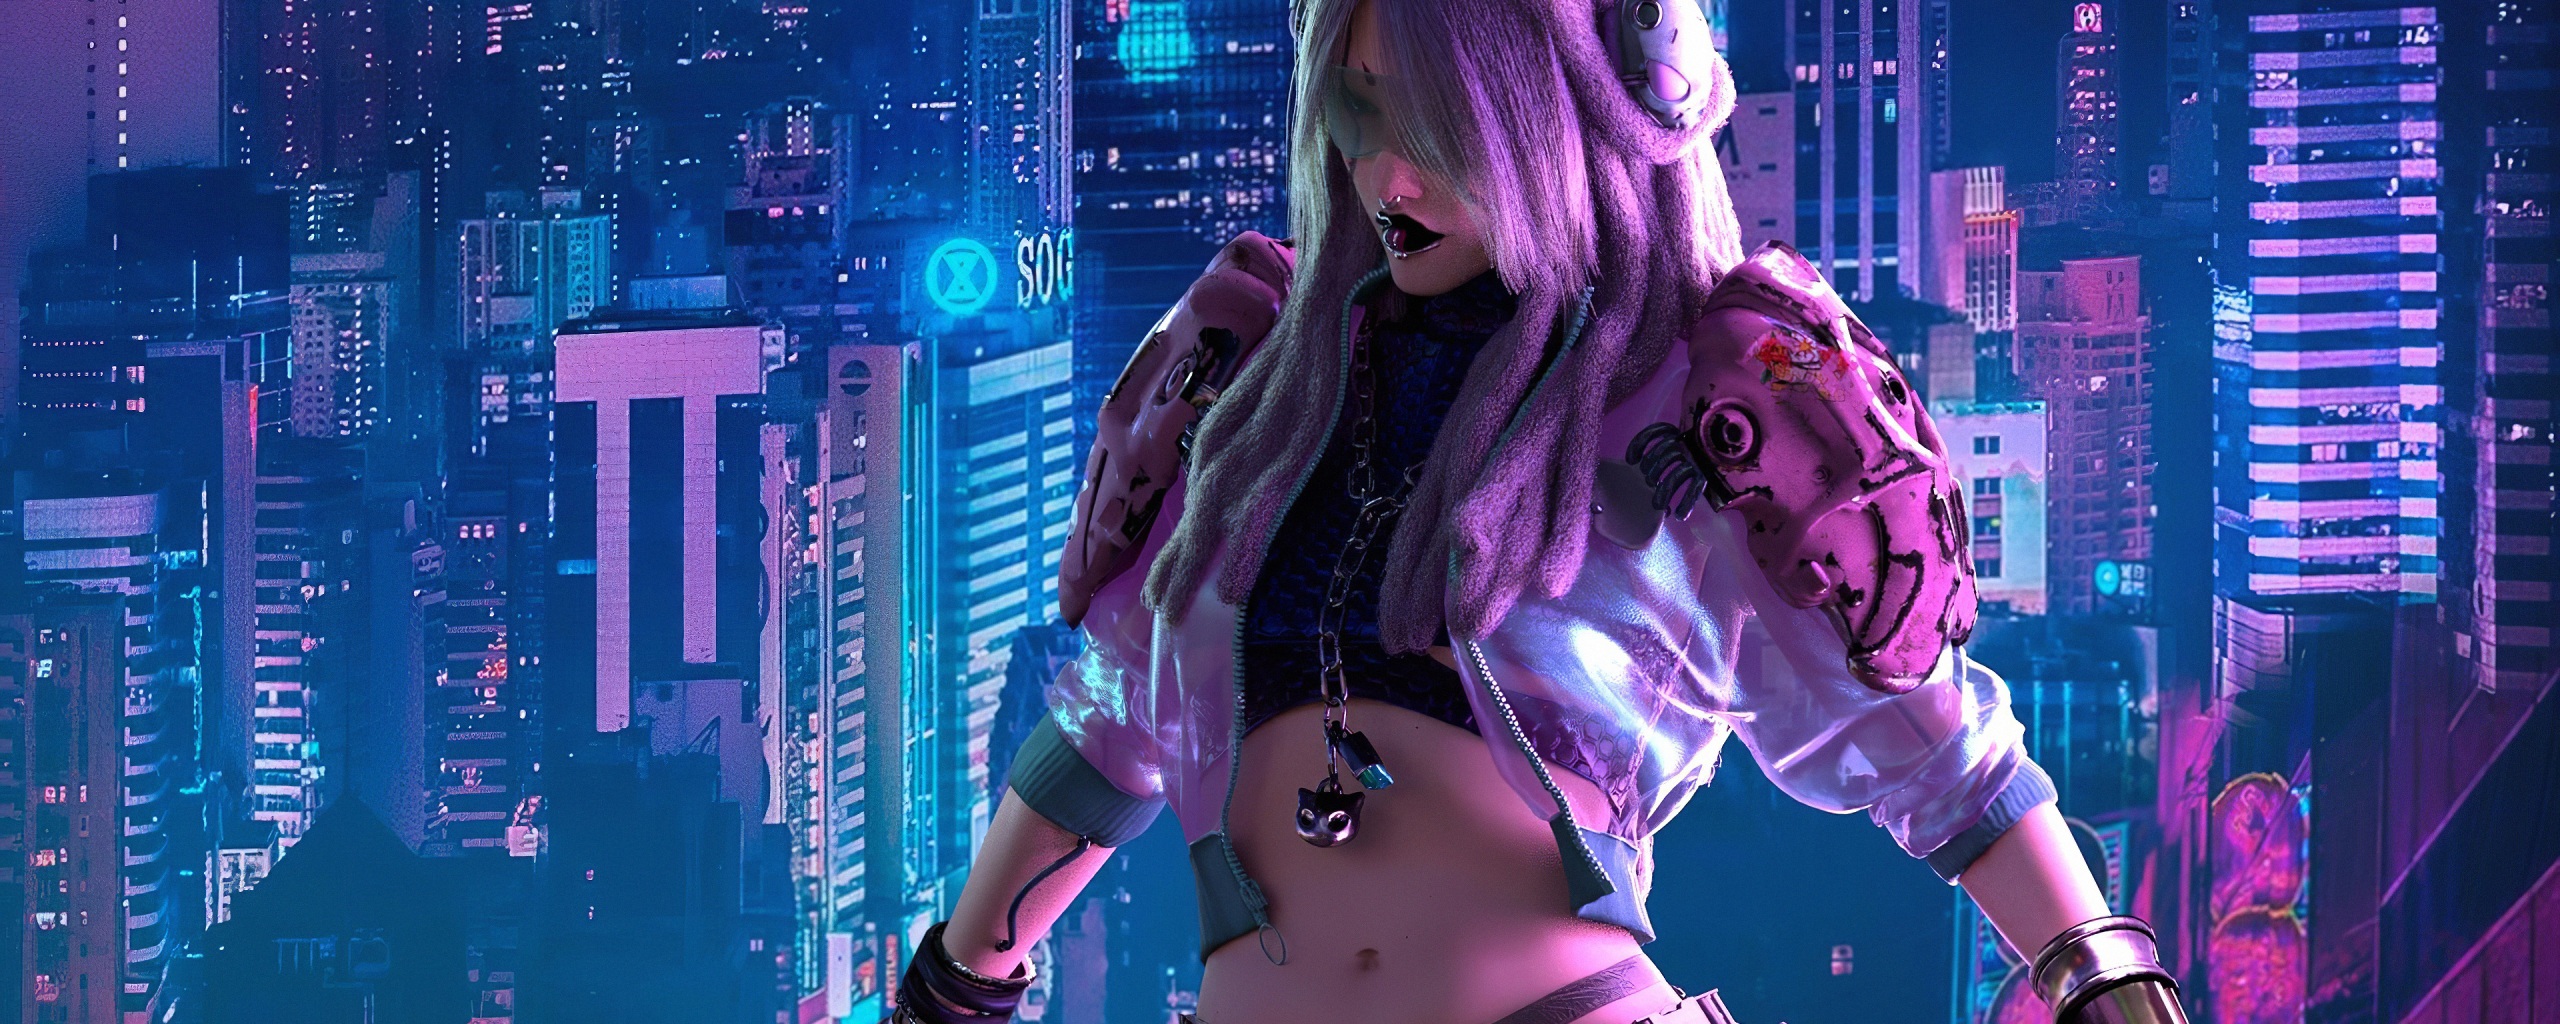 Cyberpunk City Girl Wallpaper